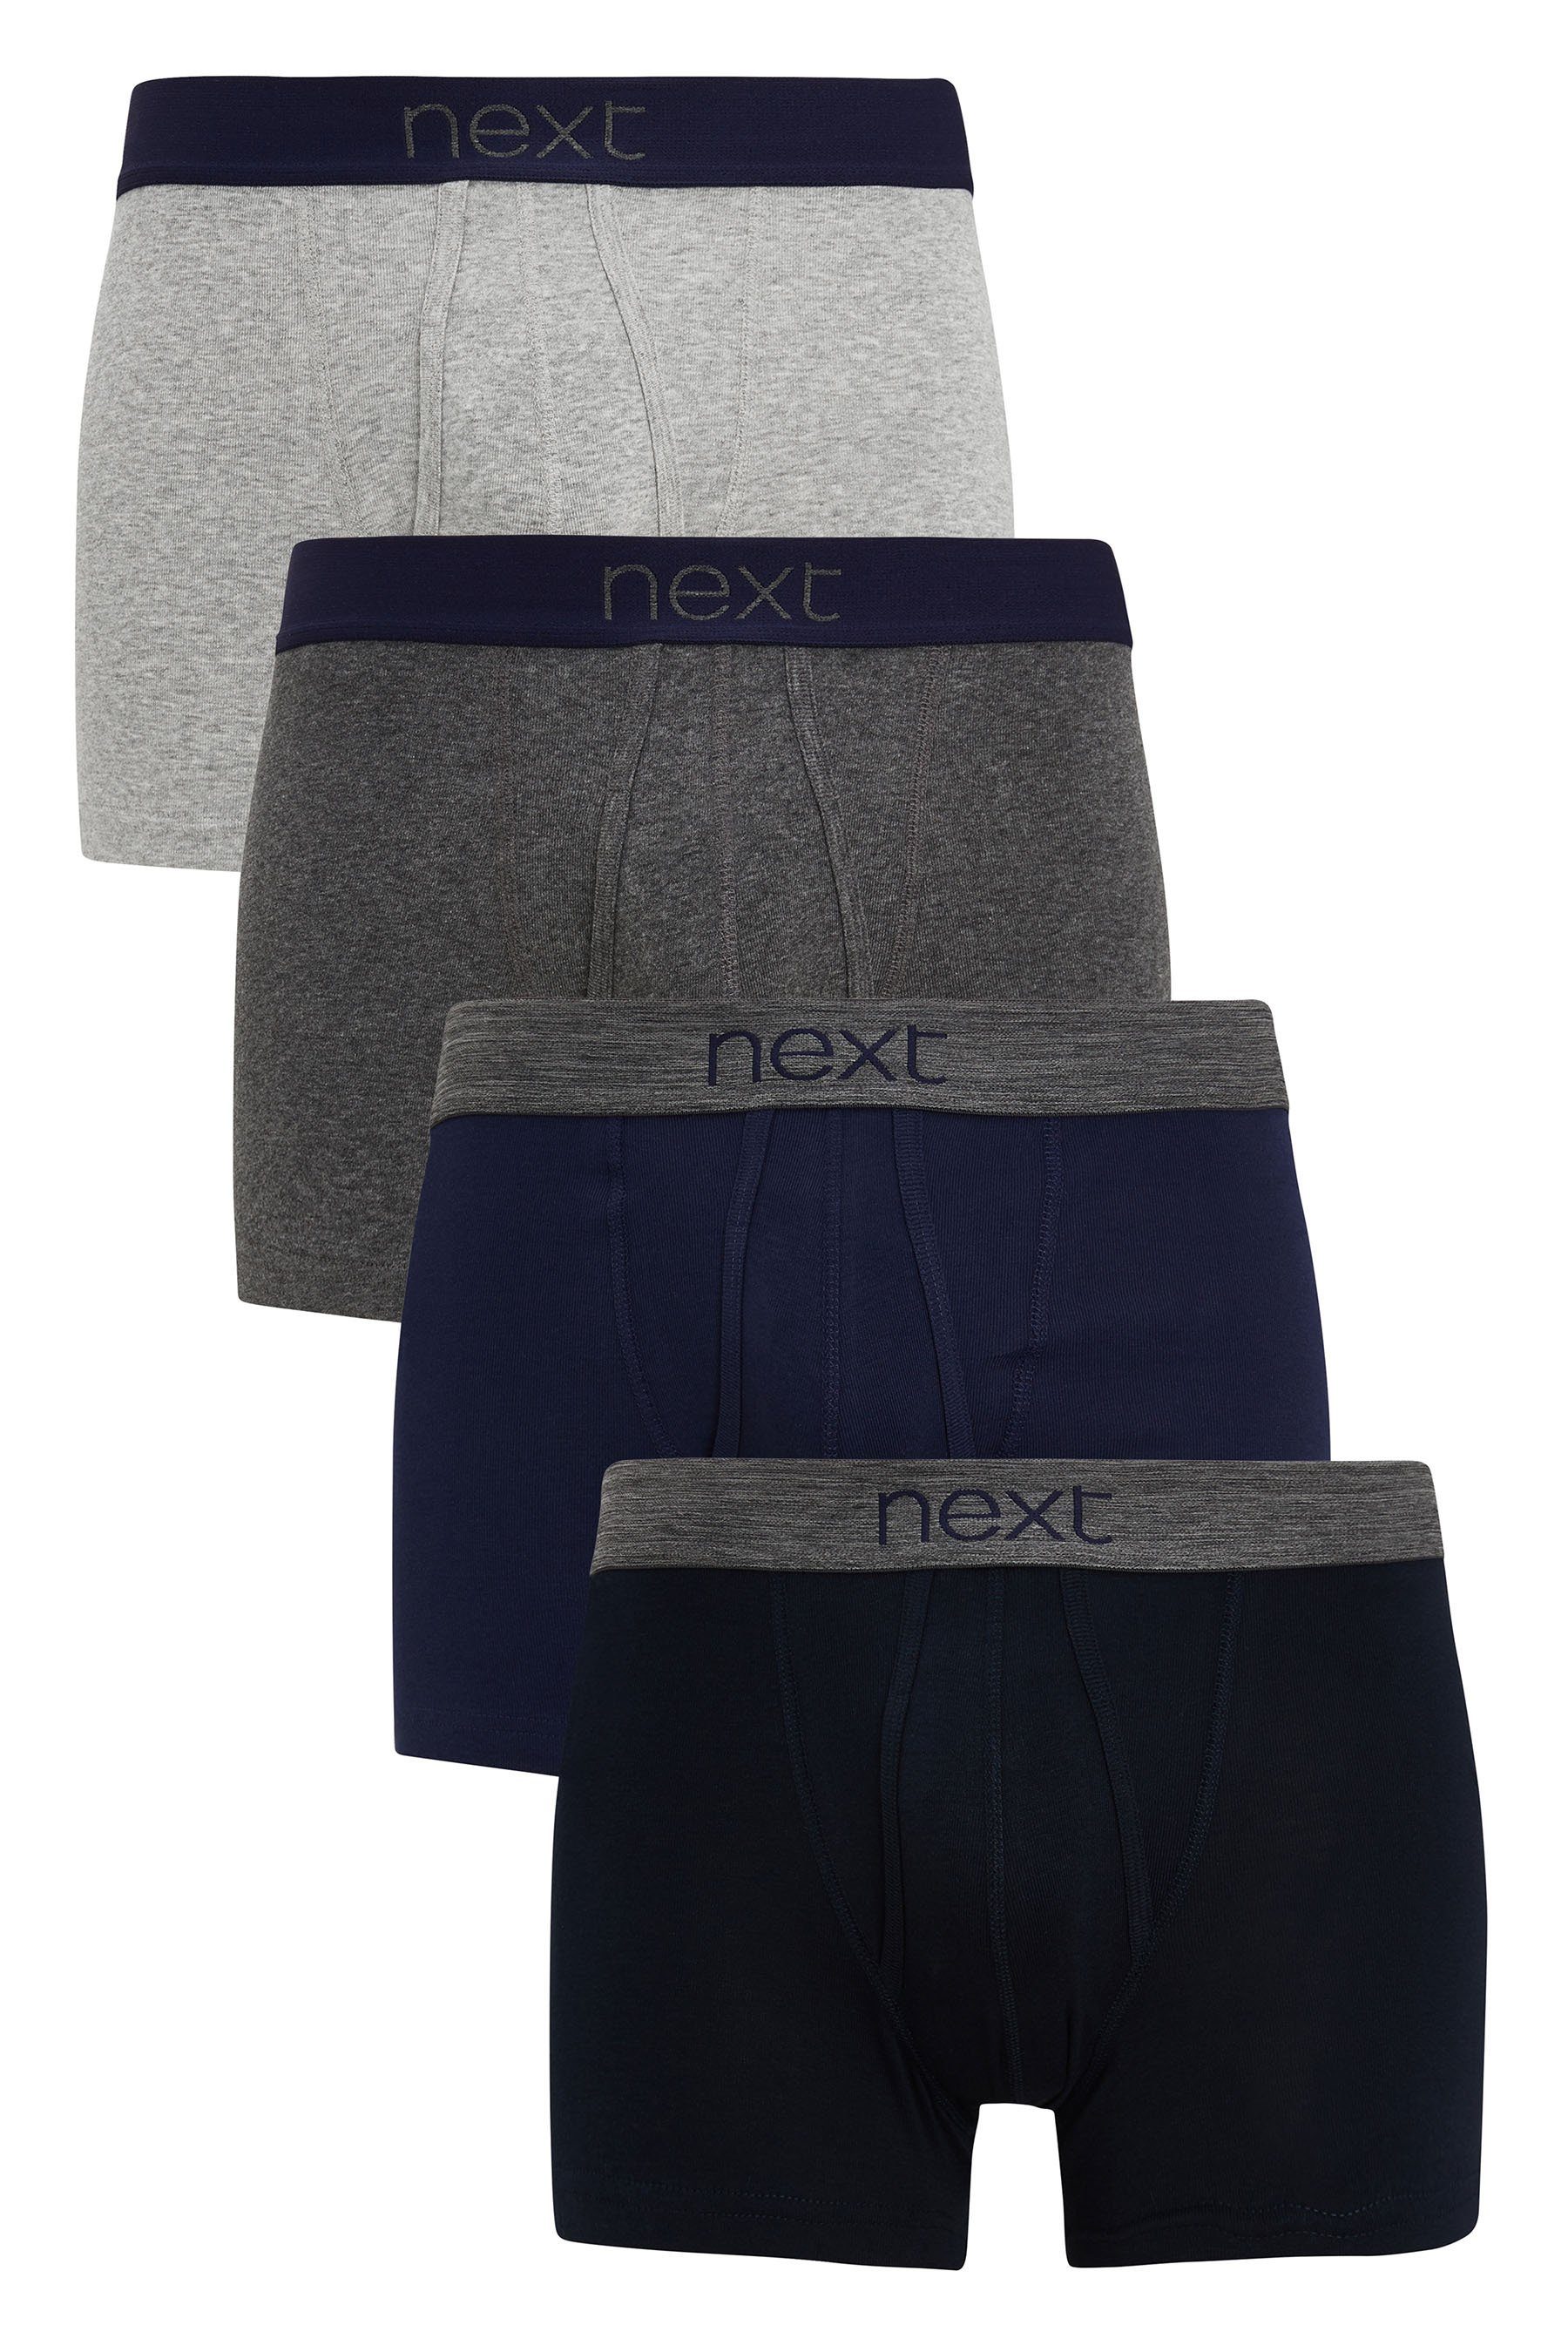 Next Boxershorts Unterhosen Grey/Navy (4-St) Baumwolle, aus 4er-Pack reiner